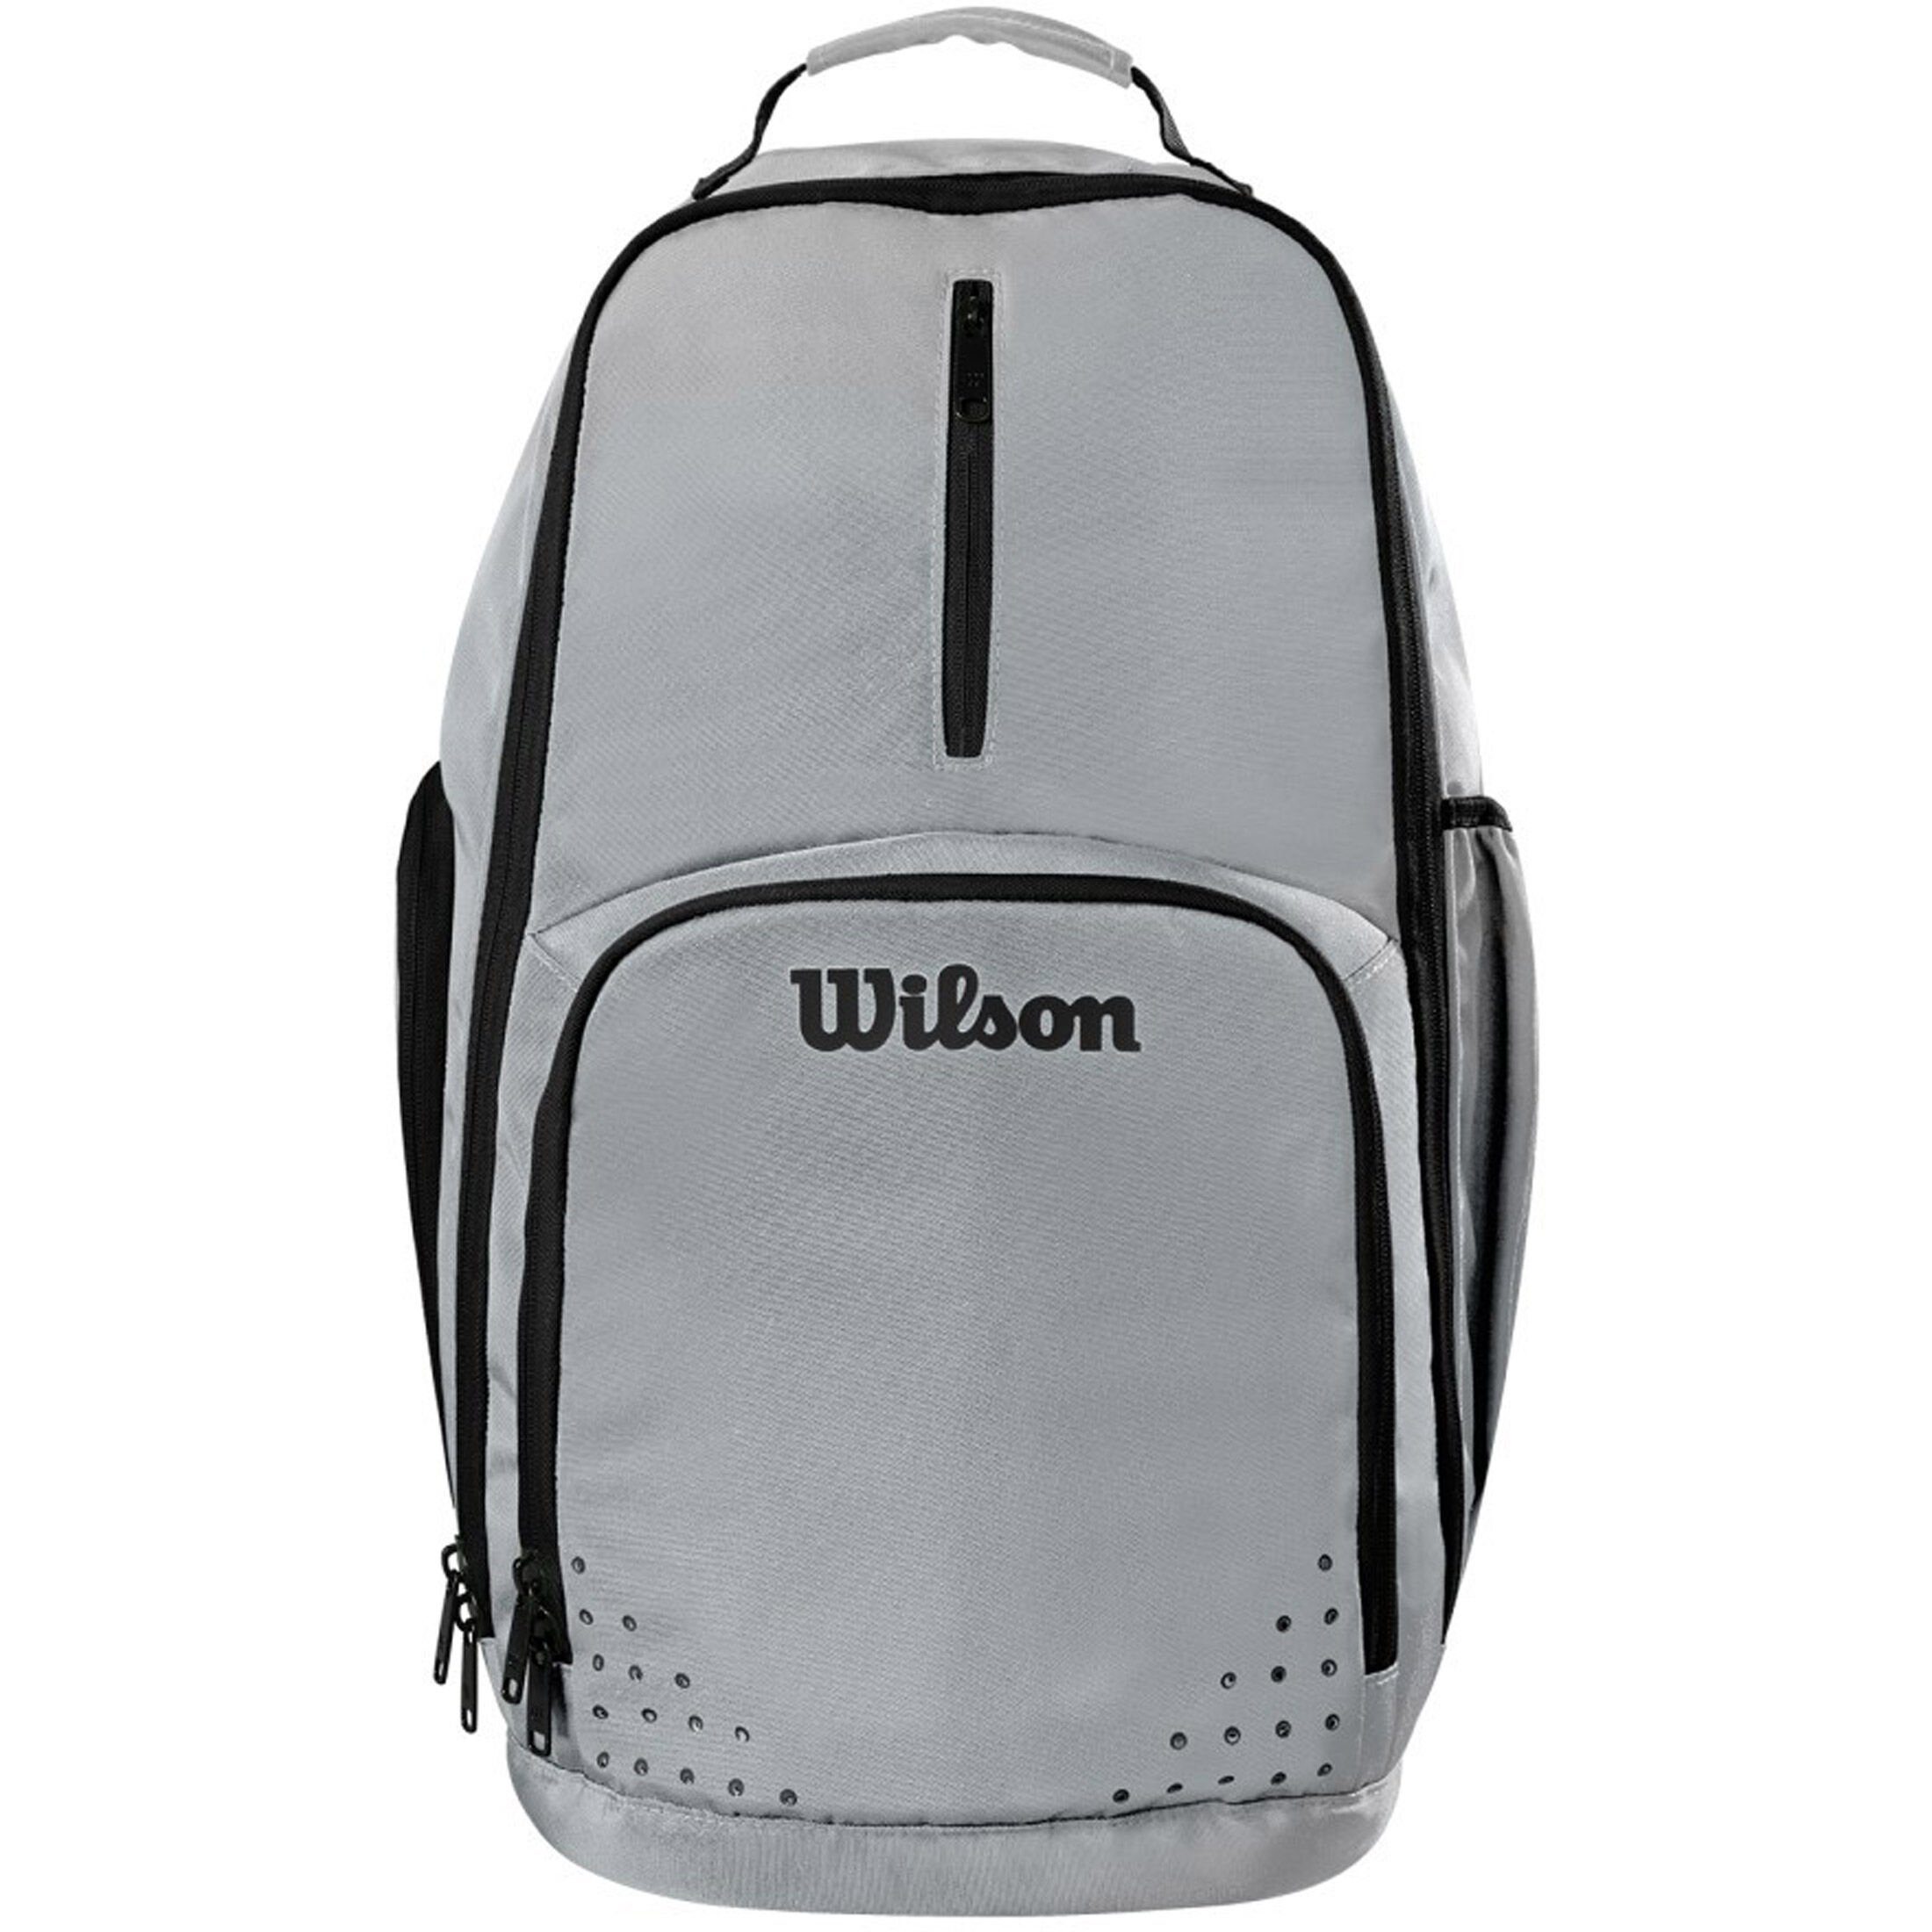 Wilson Sportrucksack Evolution Backpack Basketballrucksack